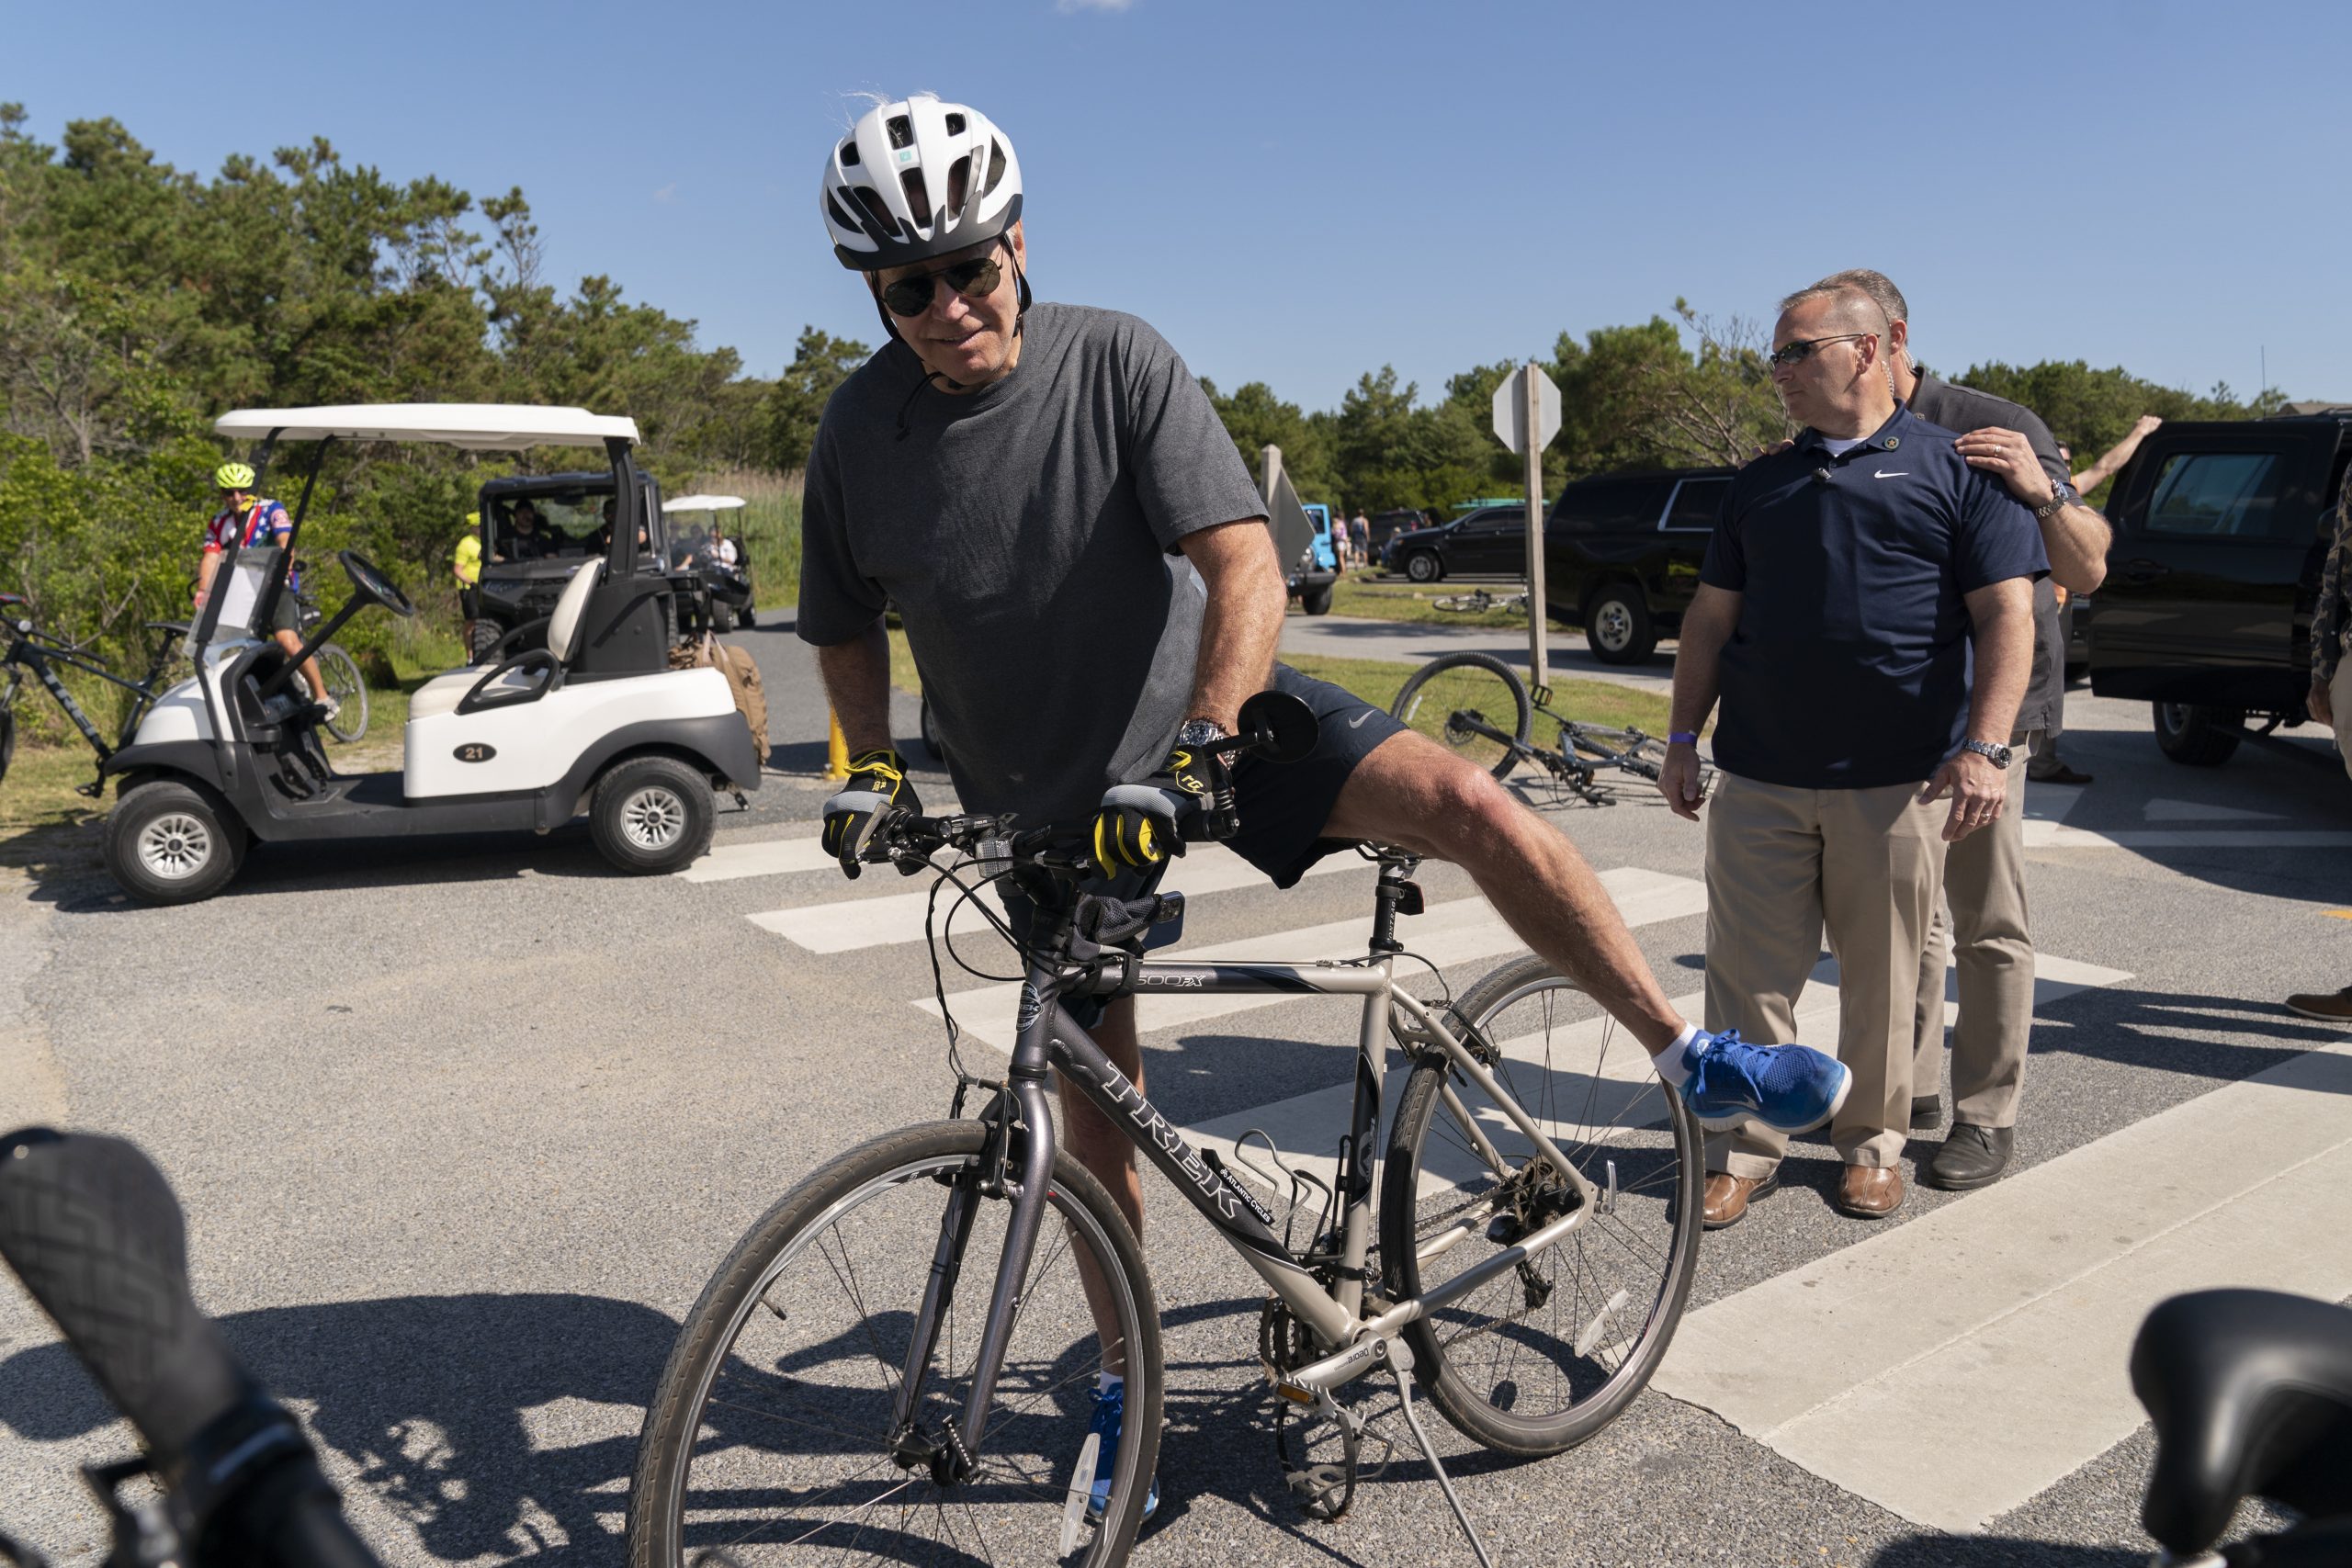 Off his bike. Joe Biden Falls off Bike. Джо Байден упал с велосипеда. Джо Байден на велосипеде.